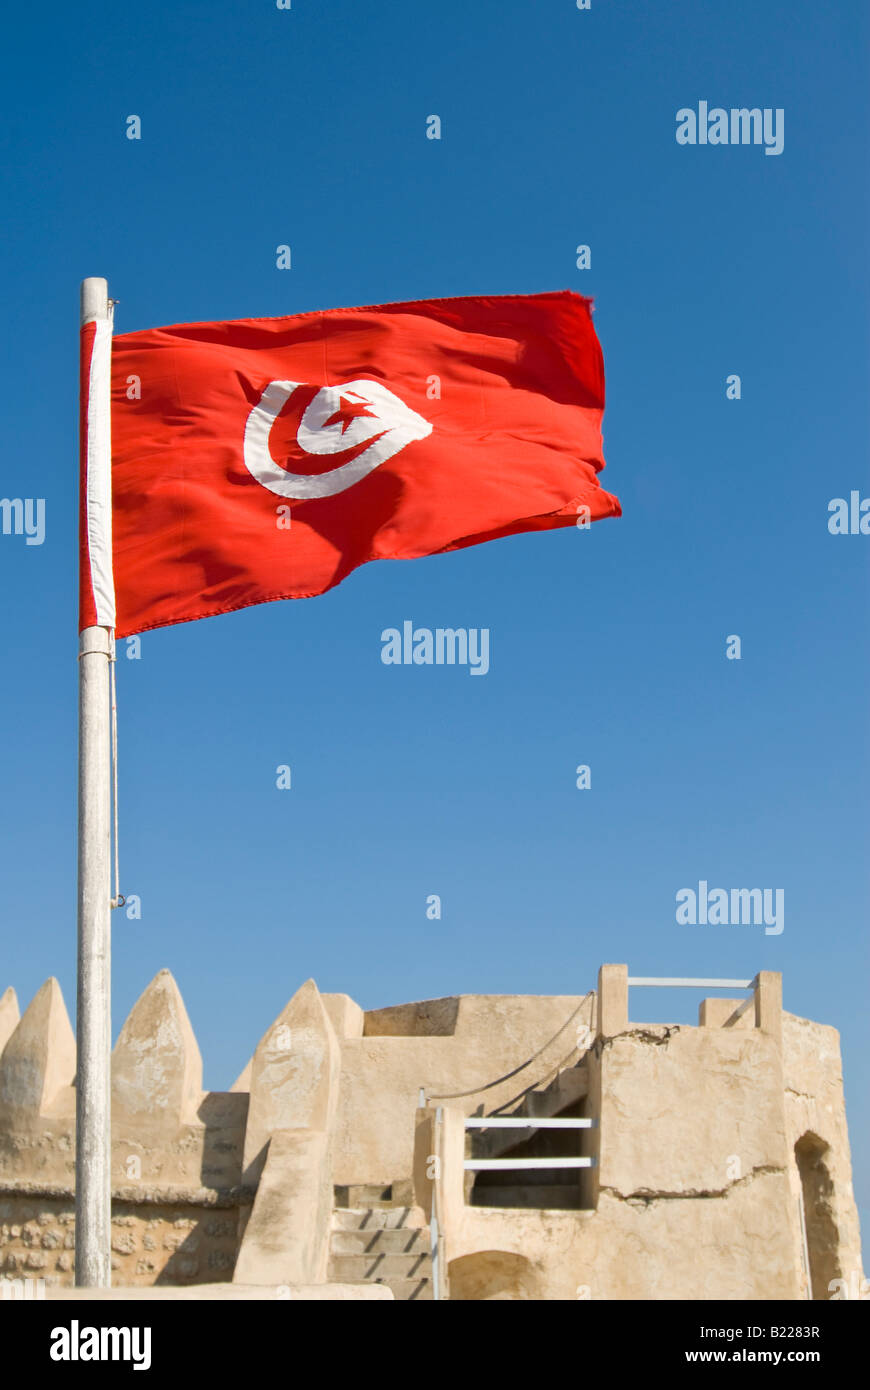 Vertikale Nahaufnahme Der Post 1999 Tunesische Flagge Mit Roten Halbmond Und Stern Vor Blauem Himmel Stockfotografie Alamy